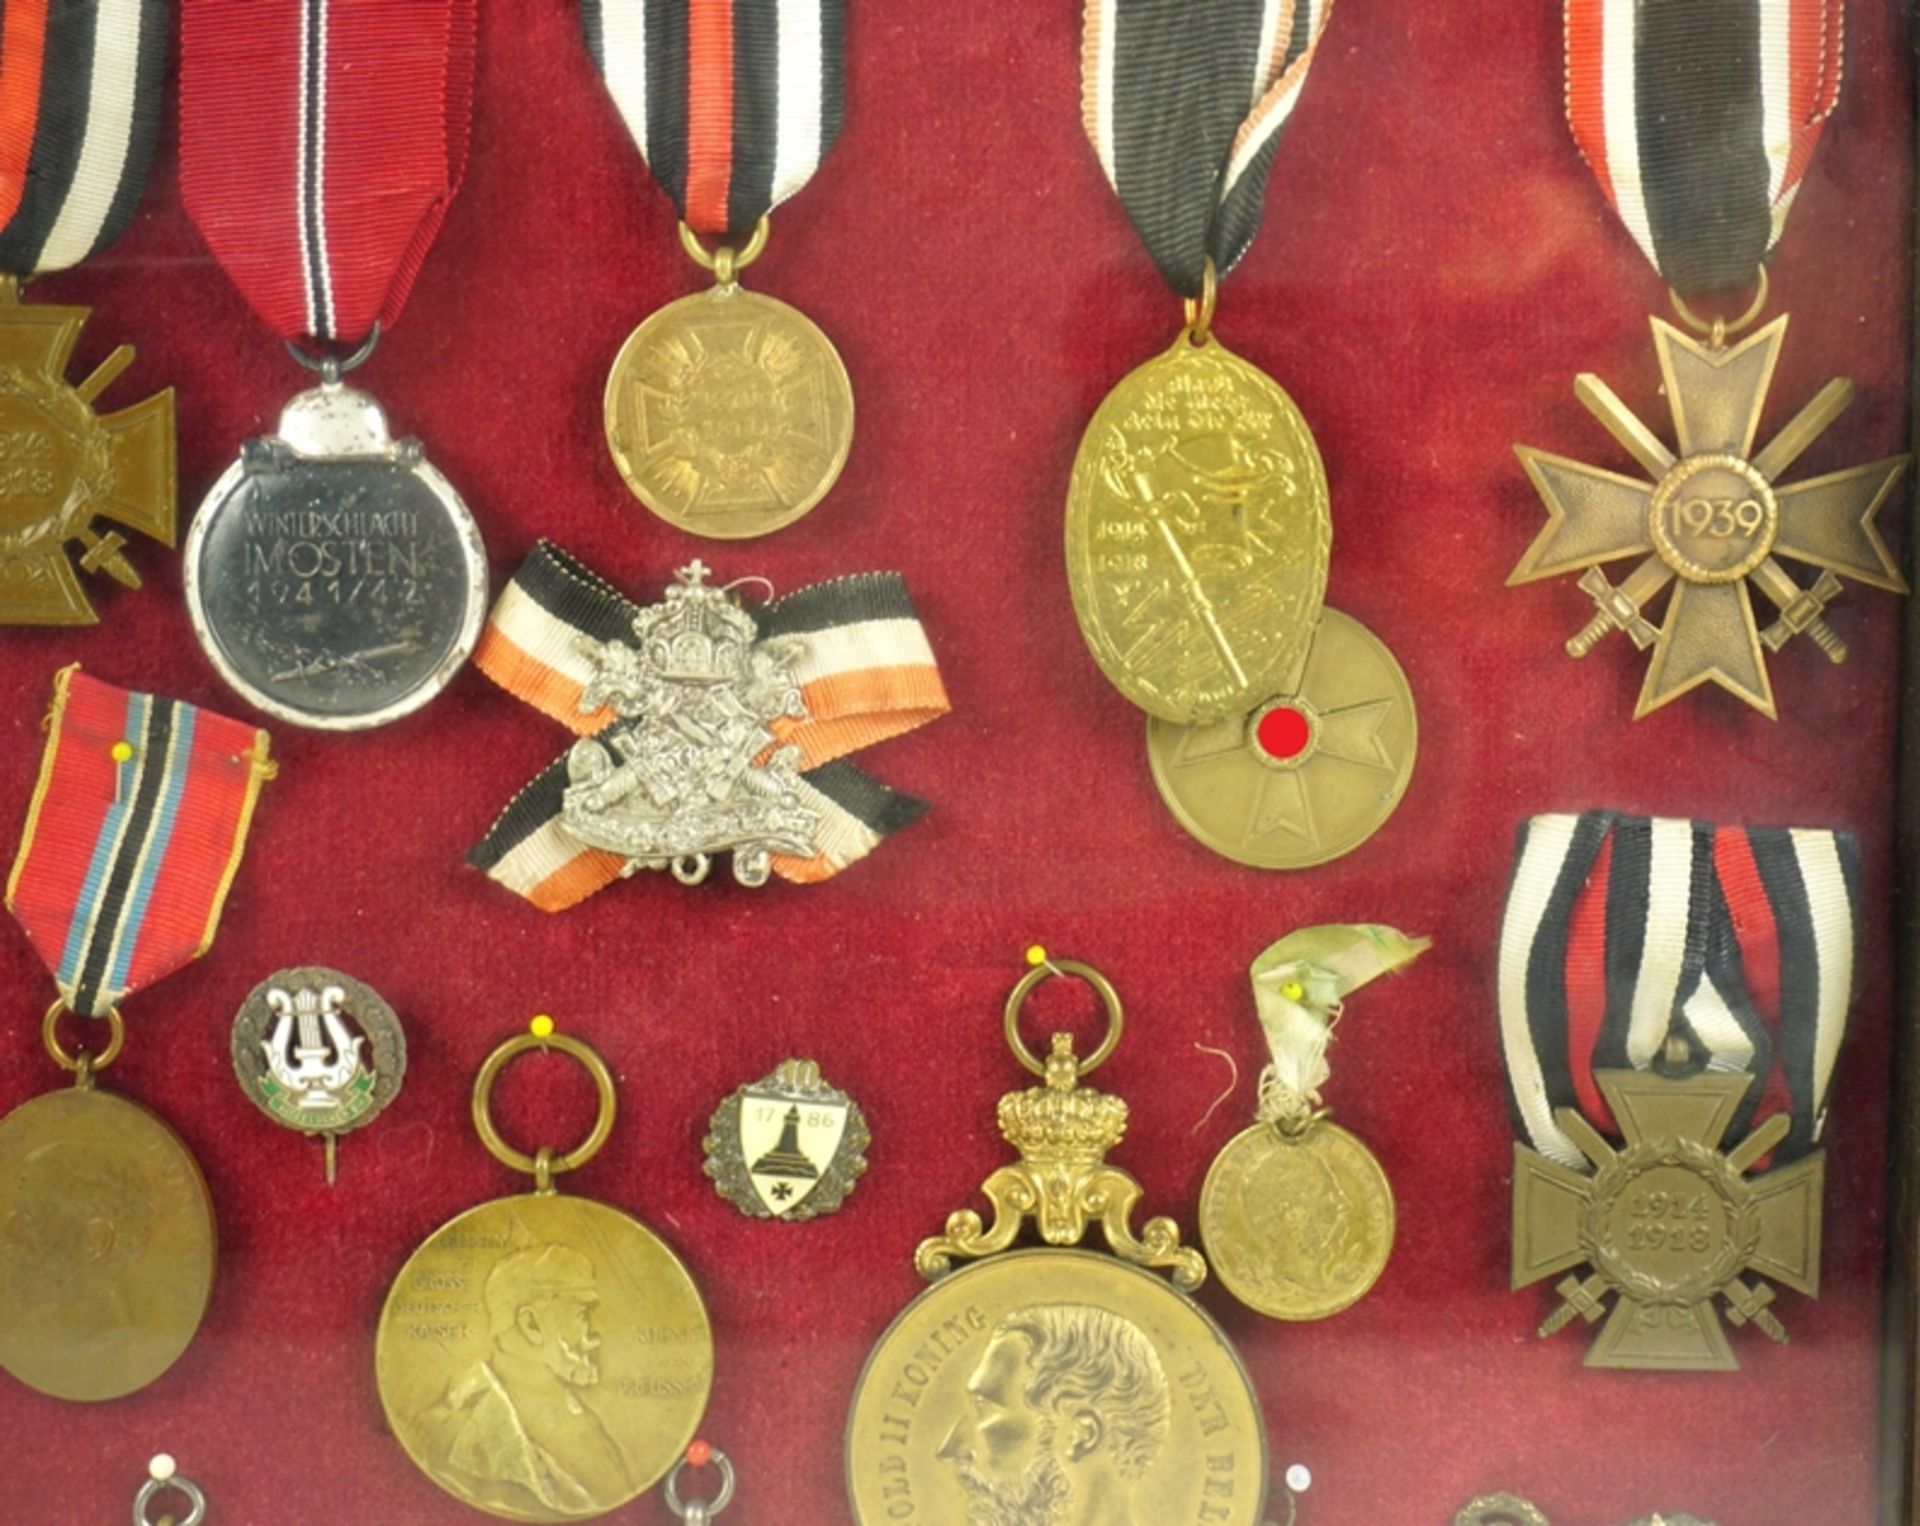 Schaurahmen mit ca. 30 Orden und Medaillen, überwiegend Deutschland, 1. und 2. Weltkrieg - Bild 2 aus 5